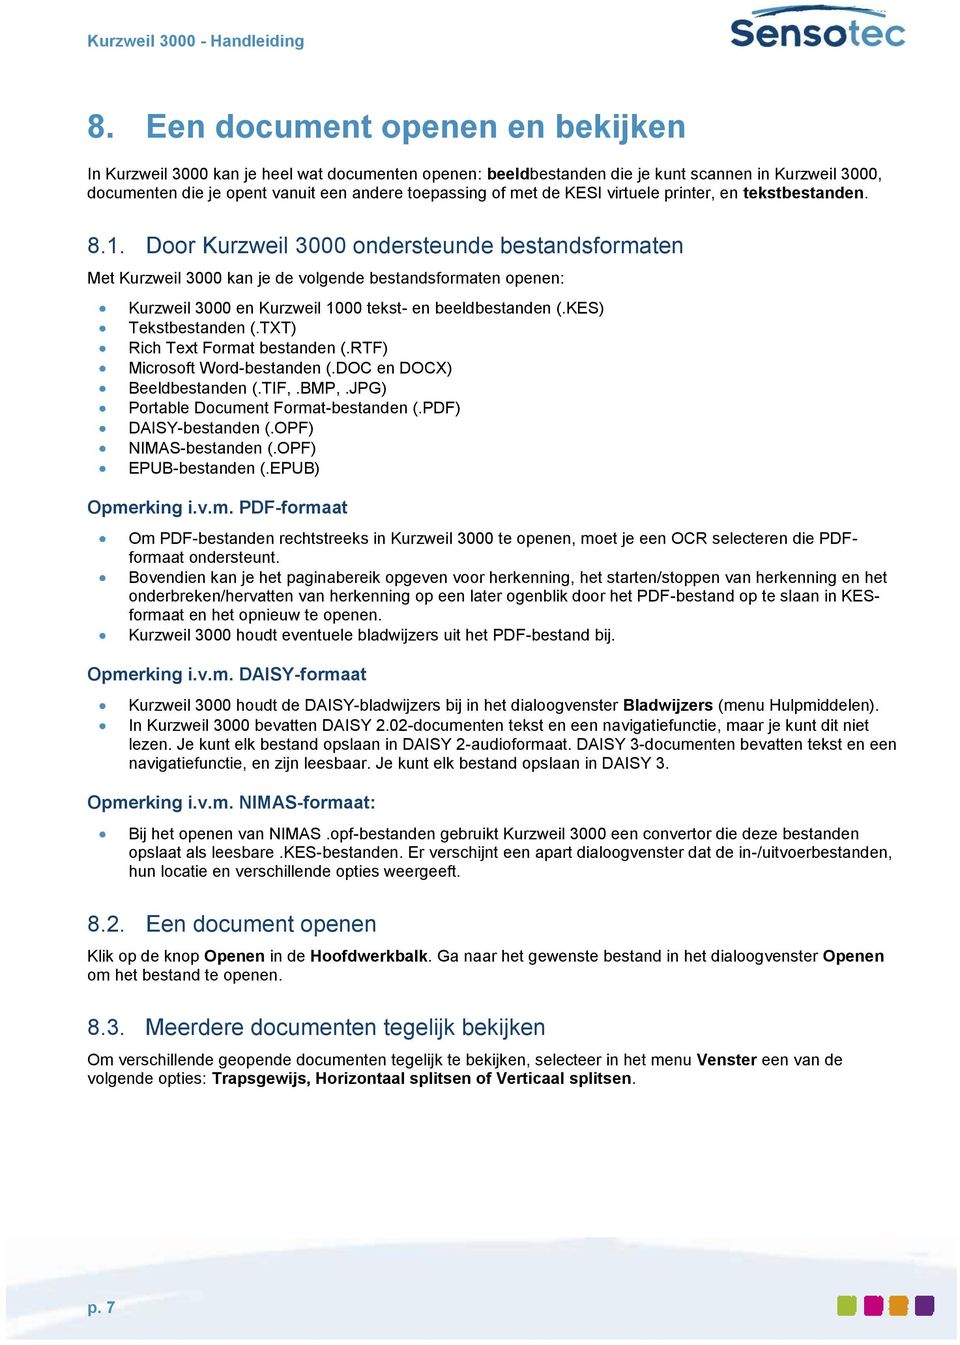 Door Kurzweil 3000 ondersteunde bestandsformaten Met Kurzweil 3000 kan je de volgende bestandsformaten openen: Kurzweil 3000 en Kurzweil 1000 tekst- en beeldbestanden (.KES) Tekstbestanden (.